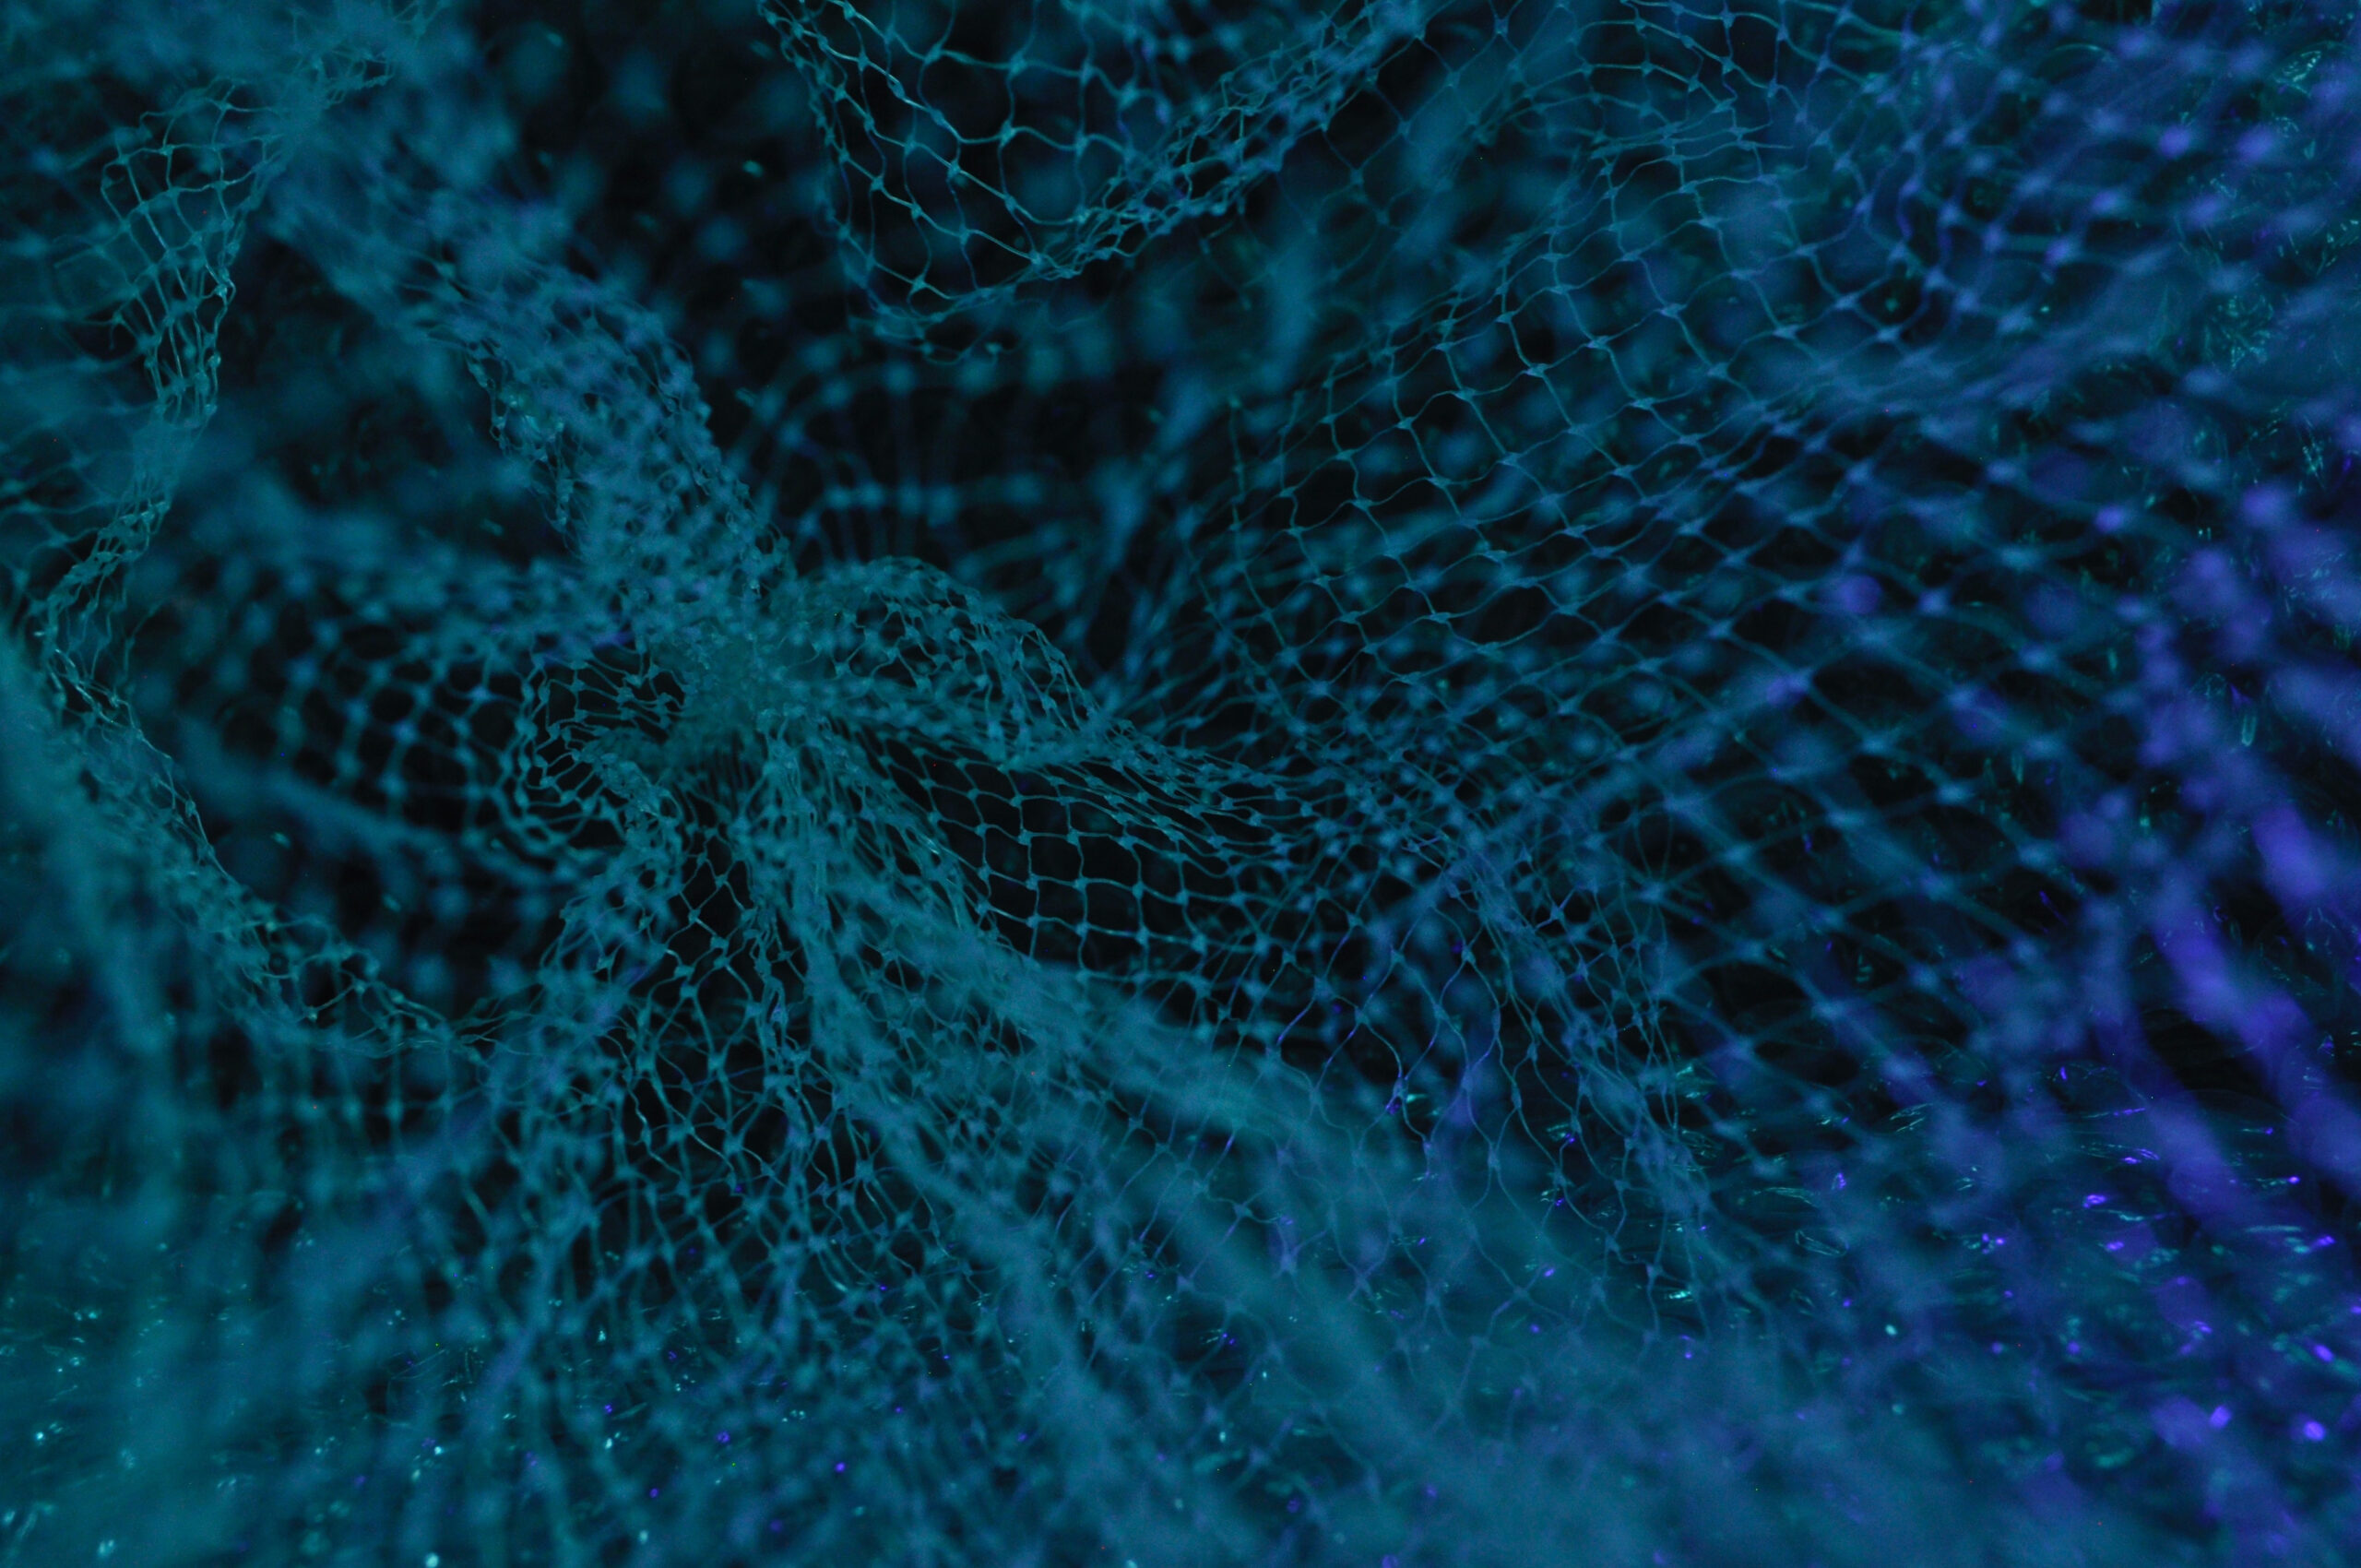 A blue net on a black background